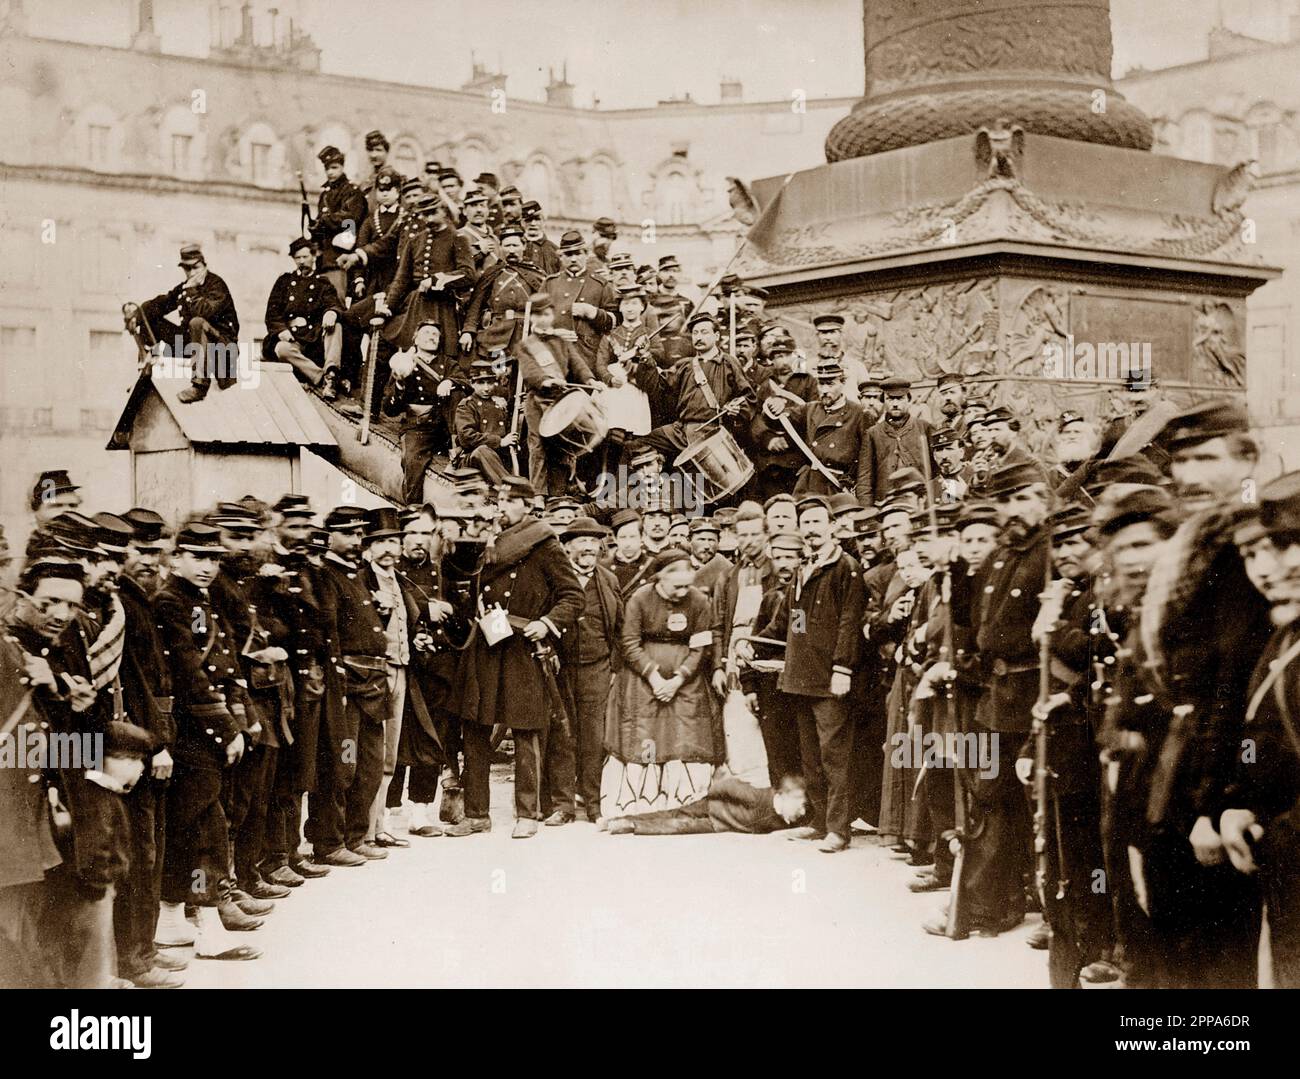 Paris Commune 1871 - La Commune de Paris 1871. Fédérés au bite de la colonne Vendôme - Photo de Auguste Bruno Braquehais Stockfoto